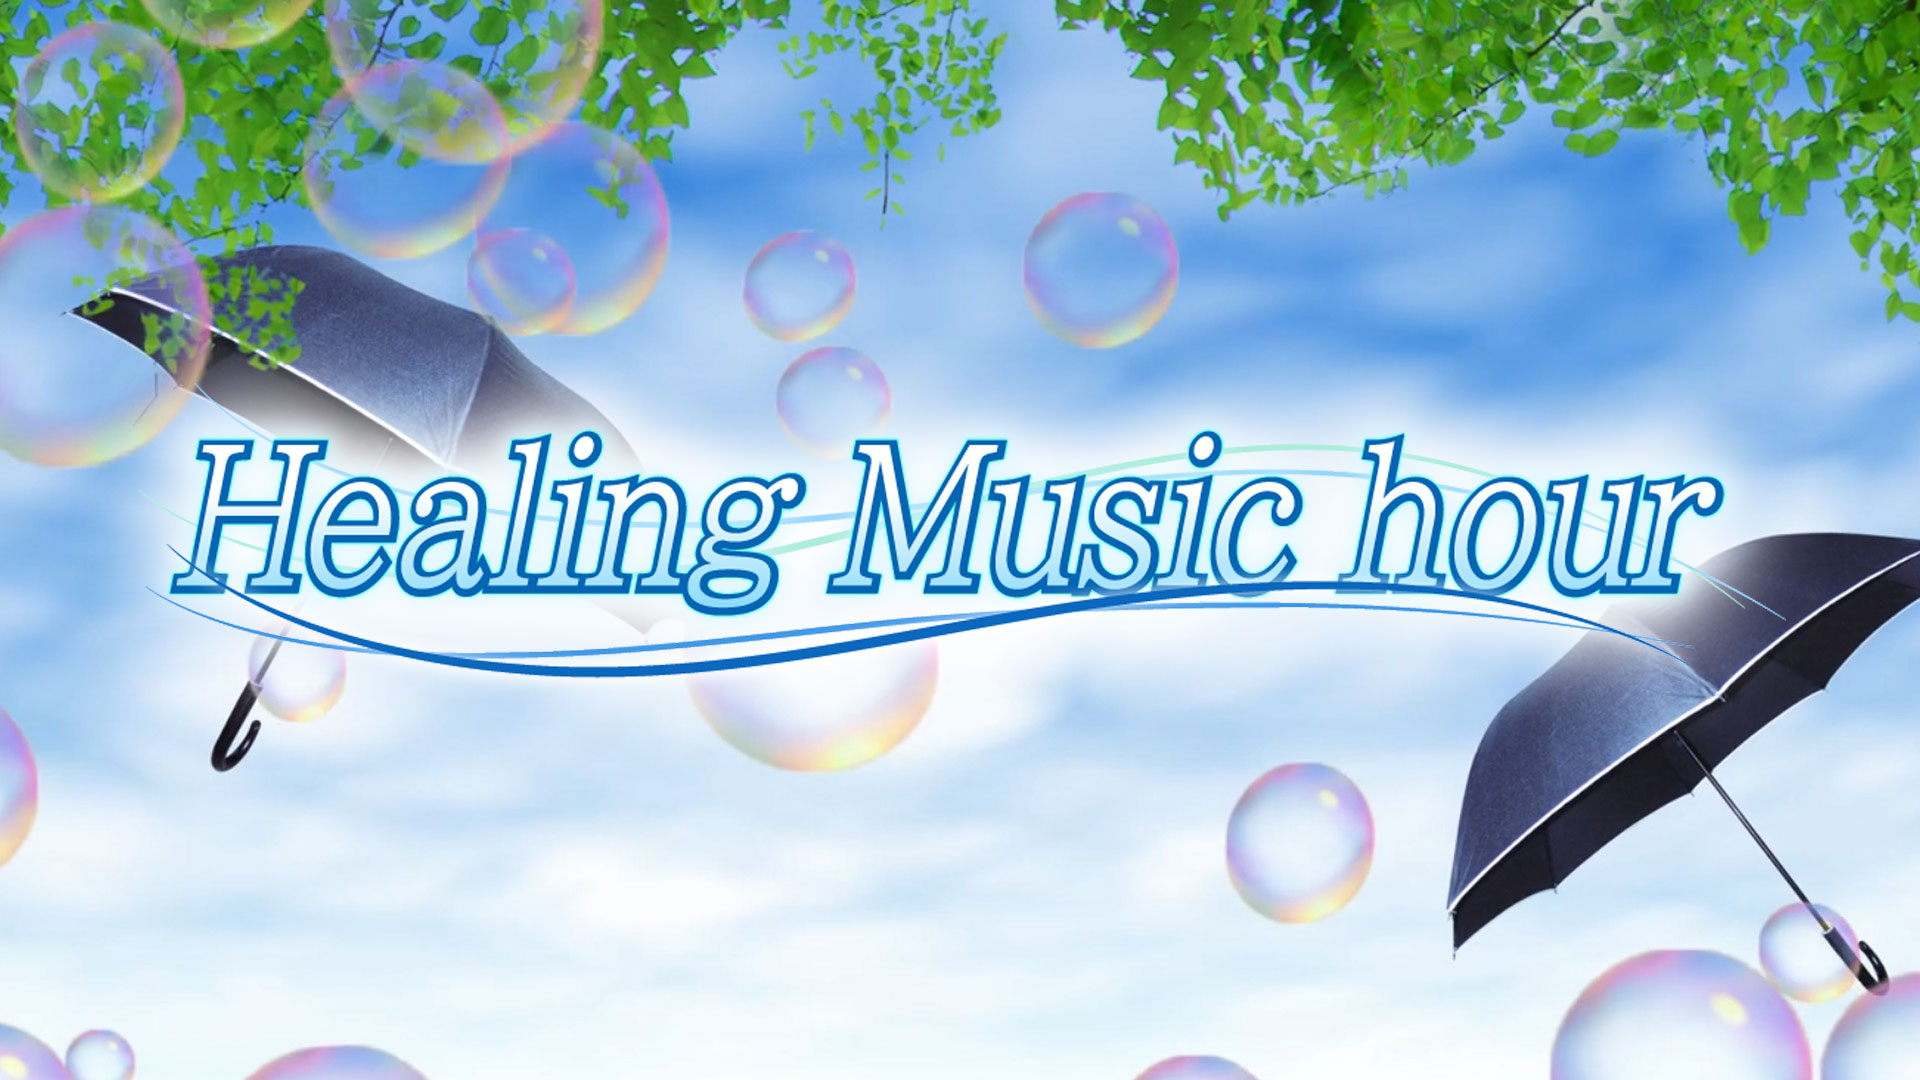 Healing Music hour